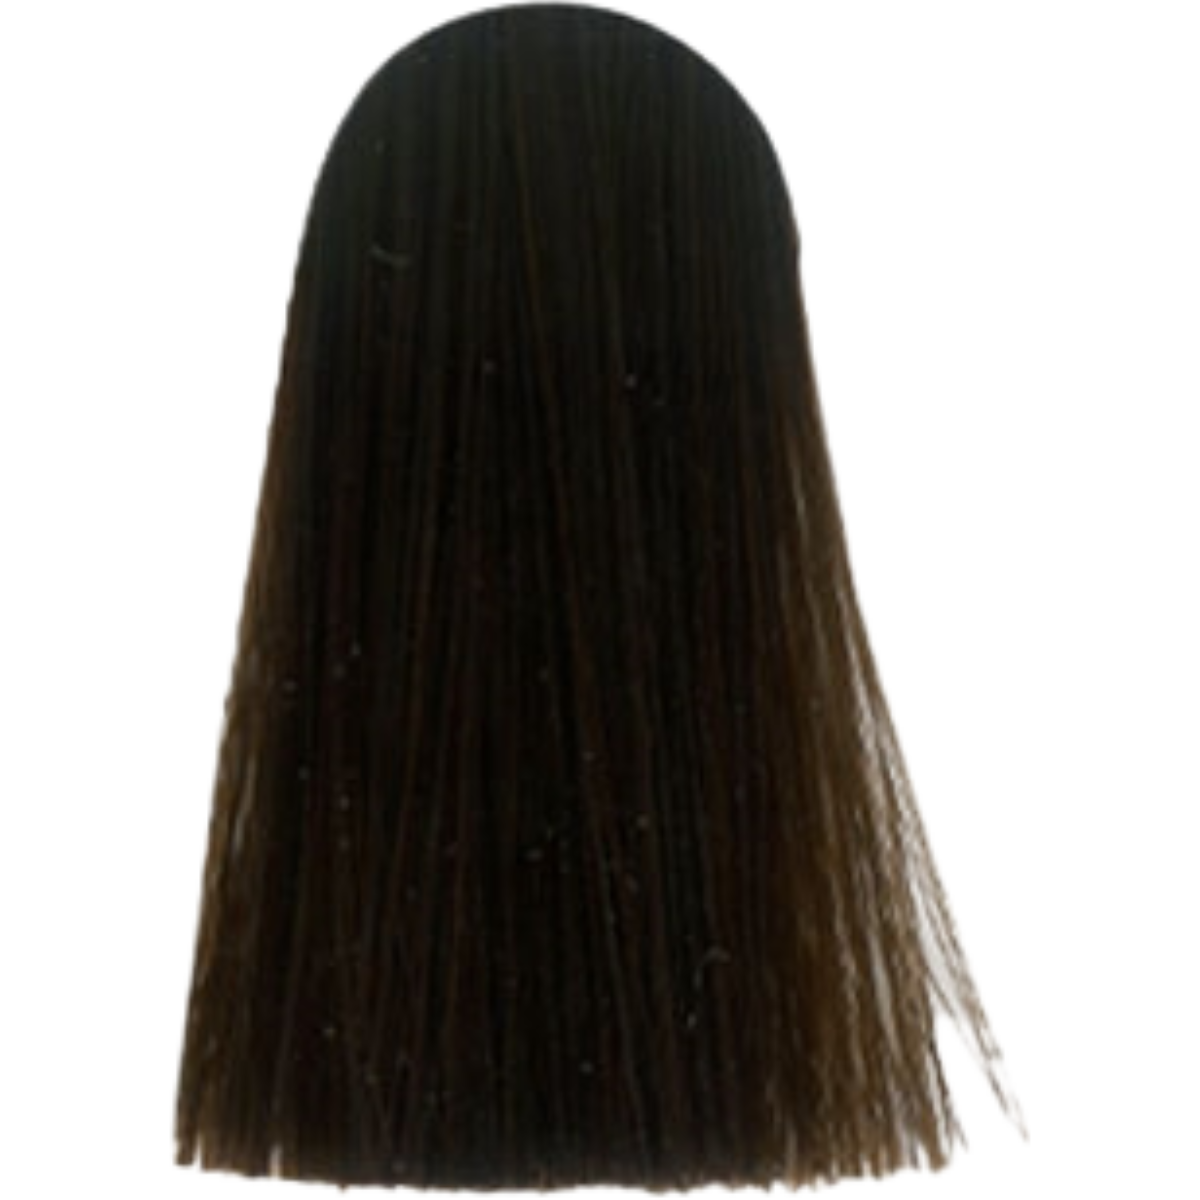 צבע לשיער 4.4 MEDIUM BROWN COPPER אינדולה INDOLA צבע לשיער 60 גרם